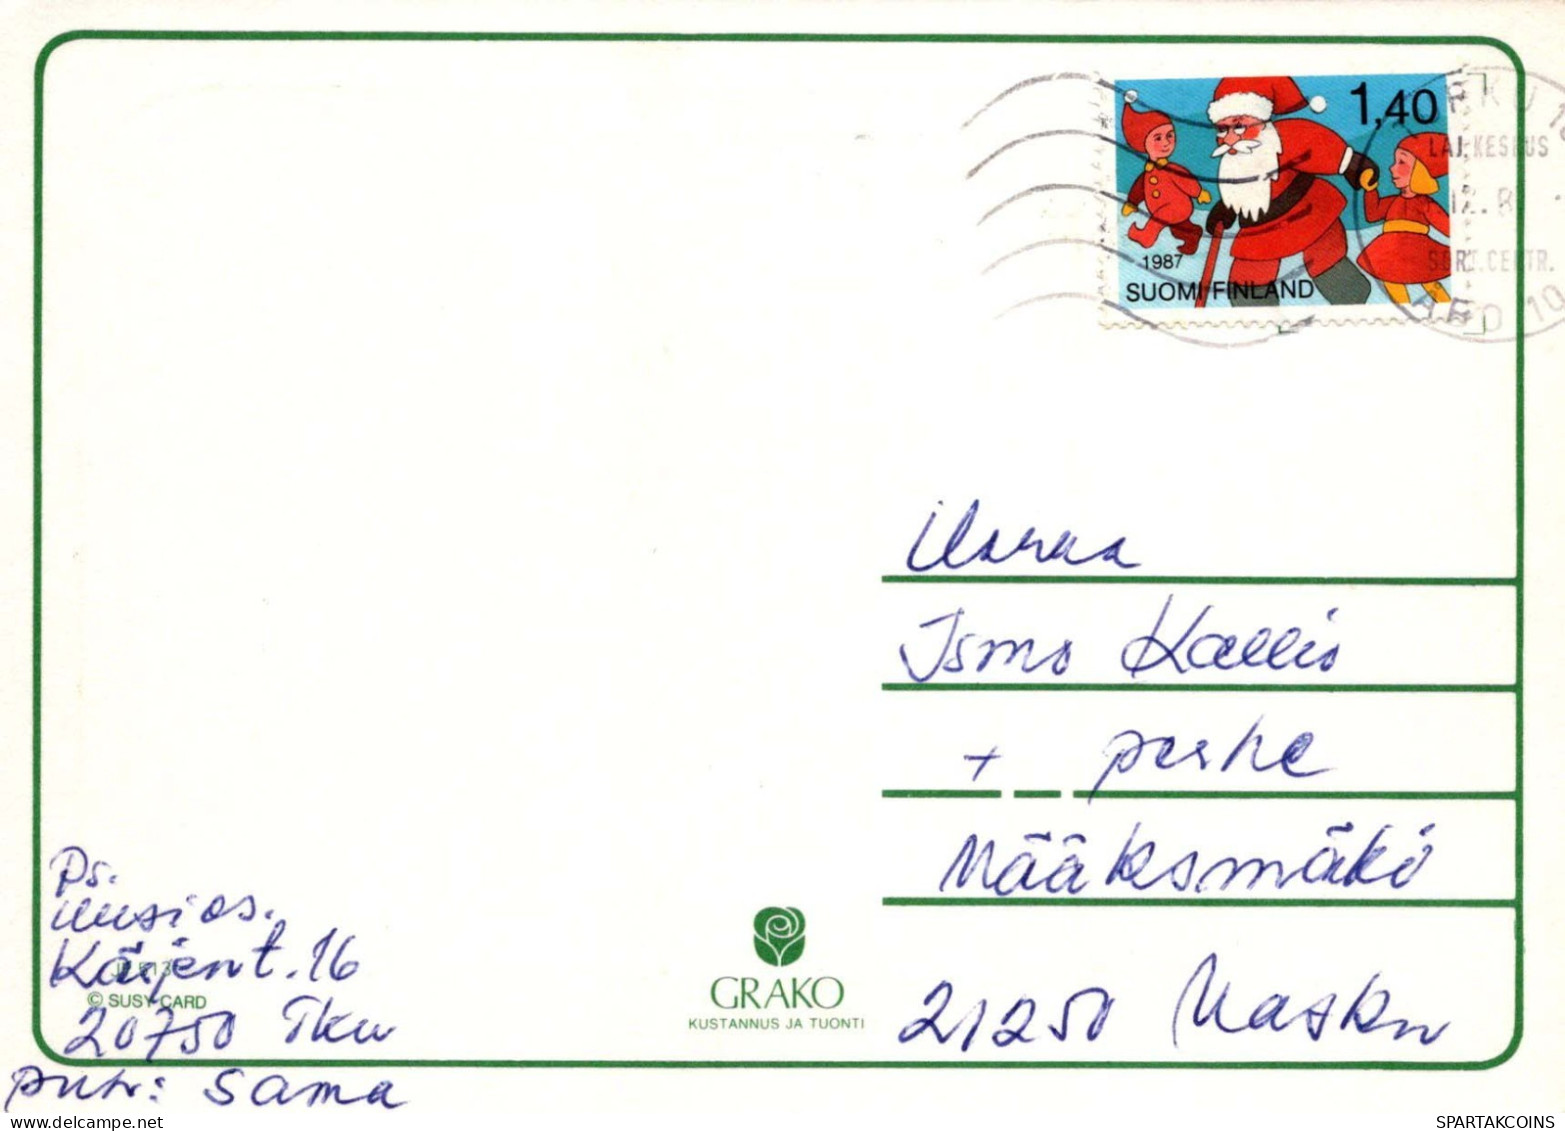 NIÑOS HUMOR Vintage Tarjeta Postal CPSM #PBV366.ES - Humorous Cards